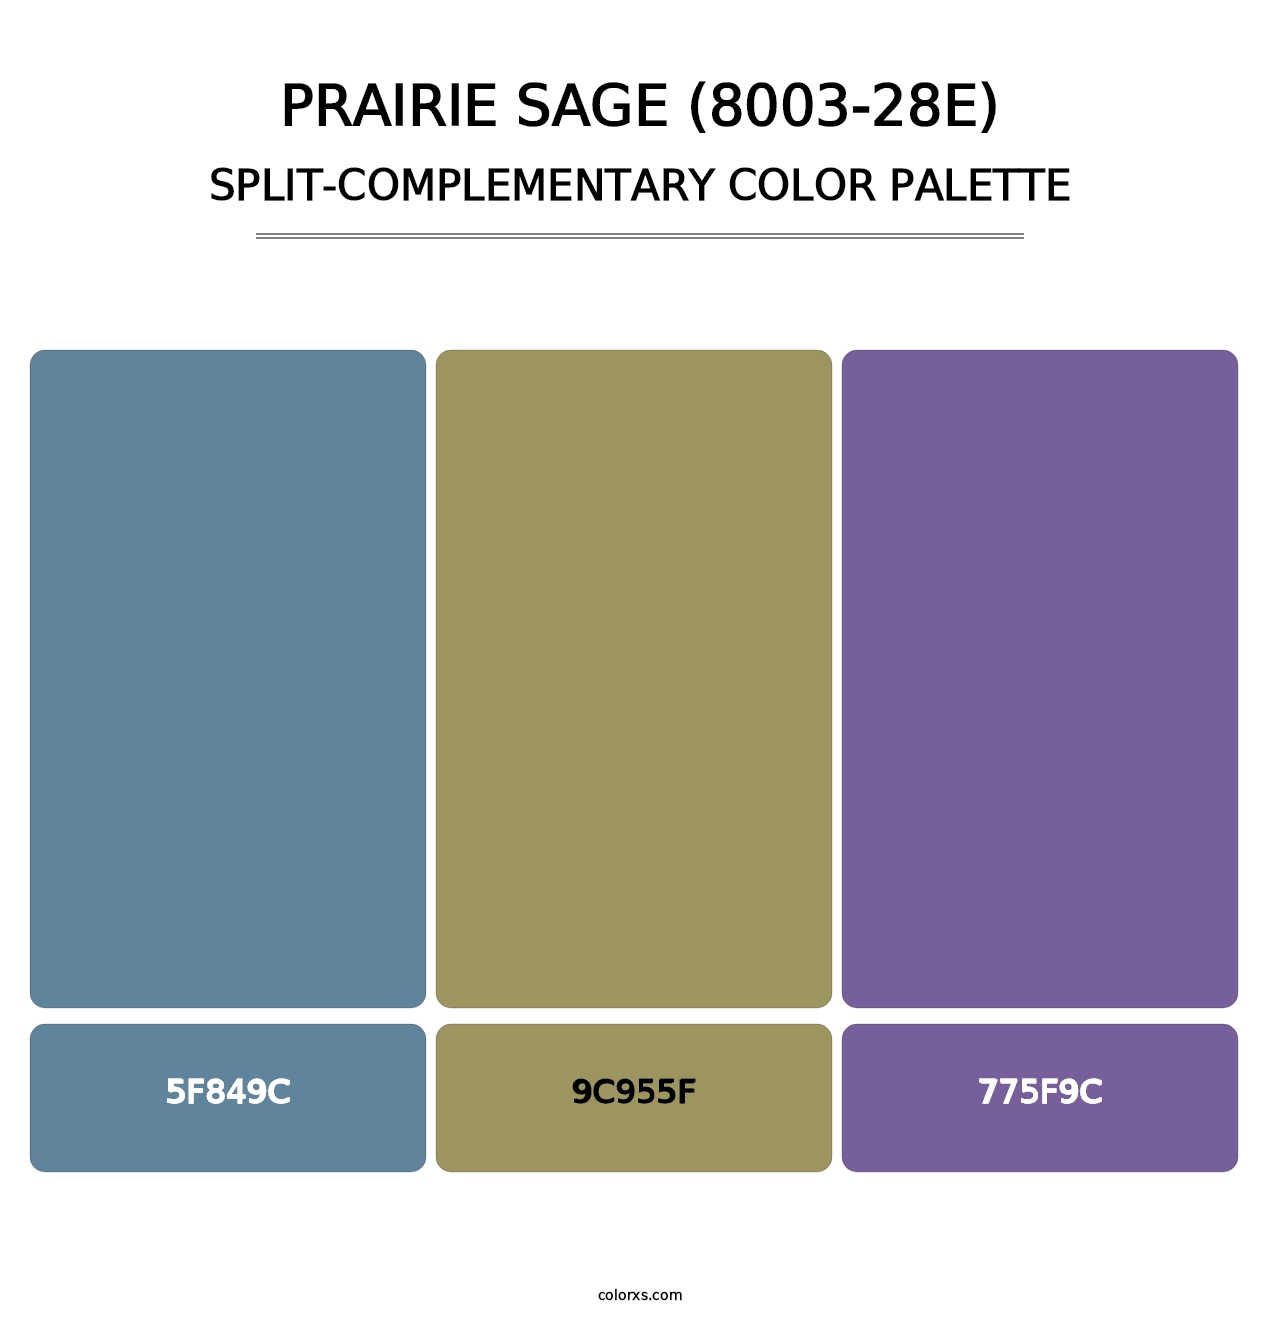 Prairie Sage (8003-28E) - Split-Complementary Color Palette